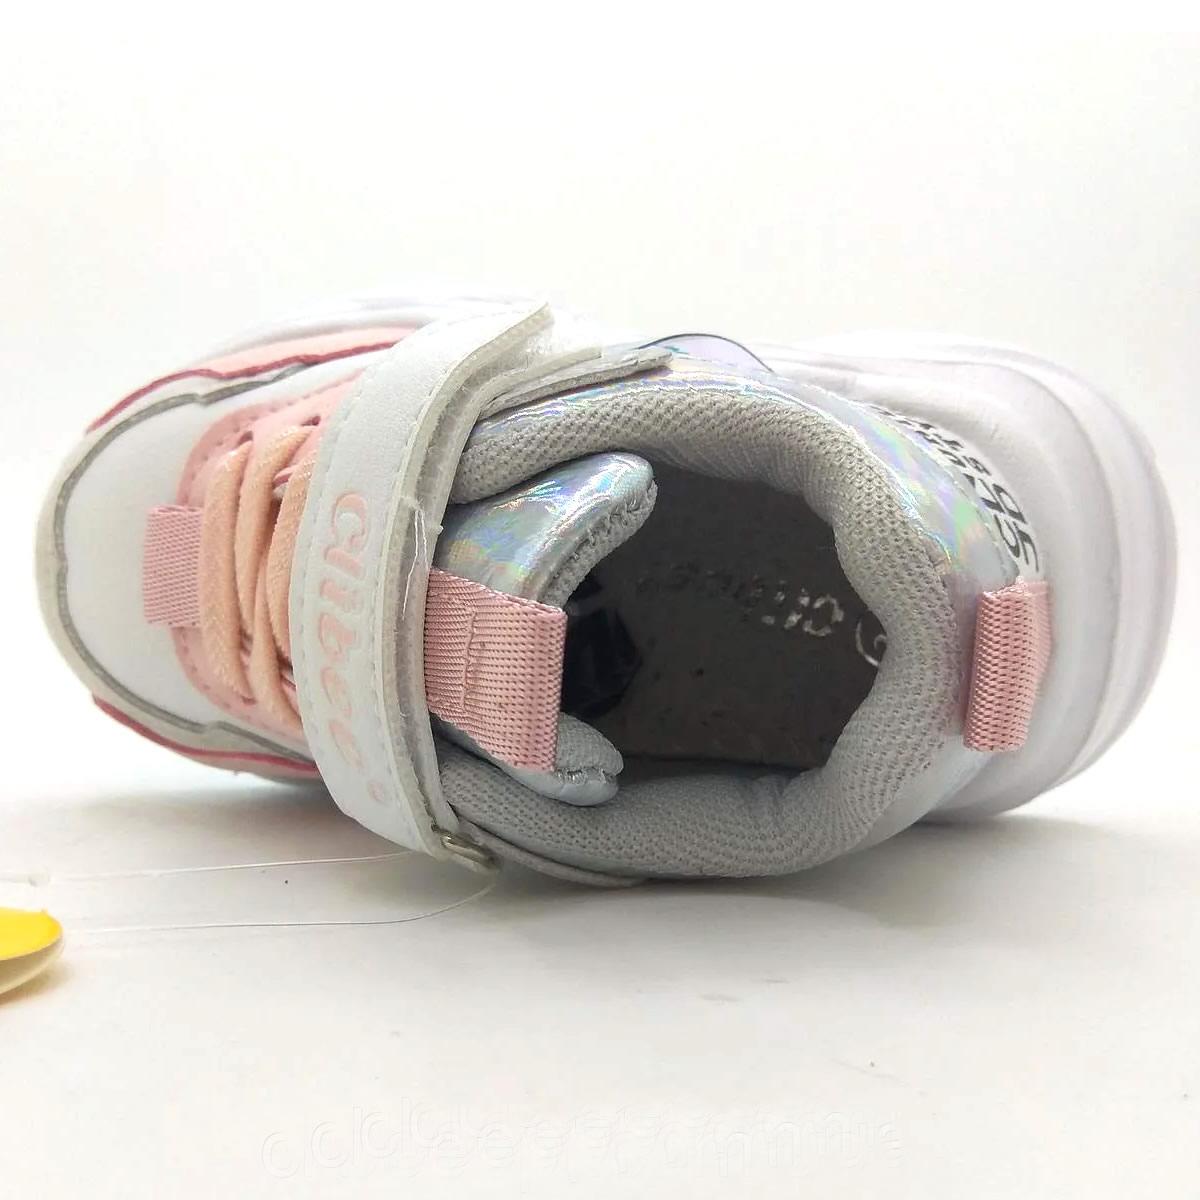 Дитячі кросівки для дівчинки, біло-рожеві 24 розміру (L-193), Clibee